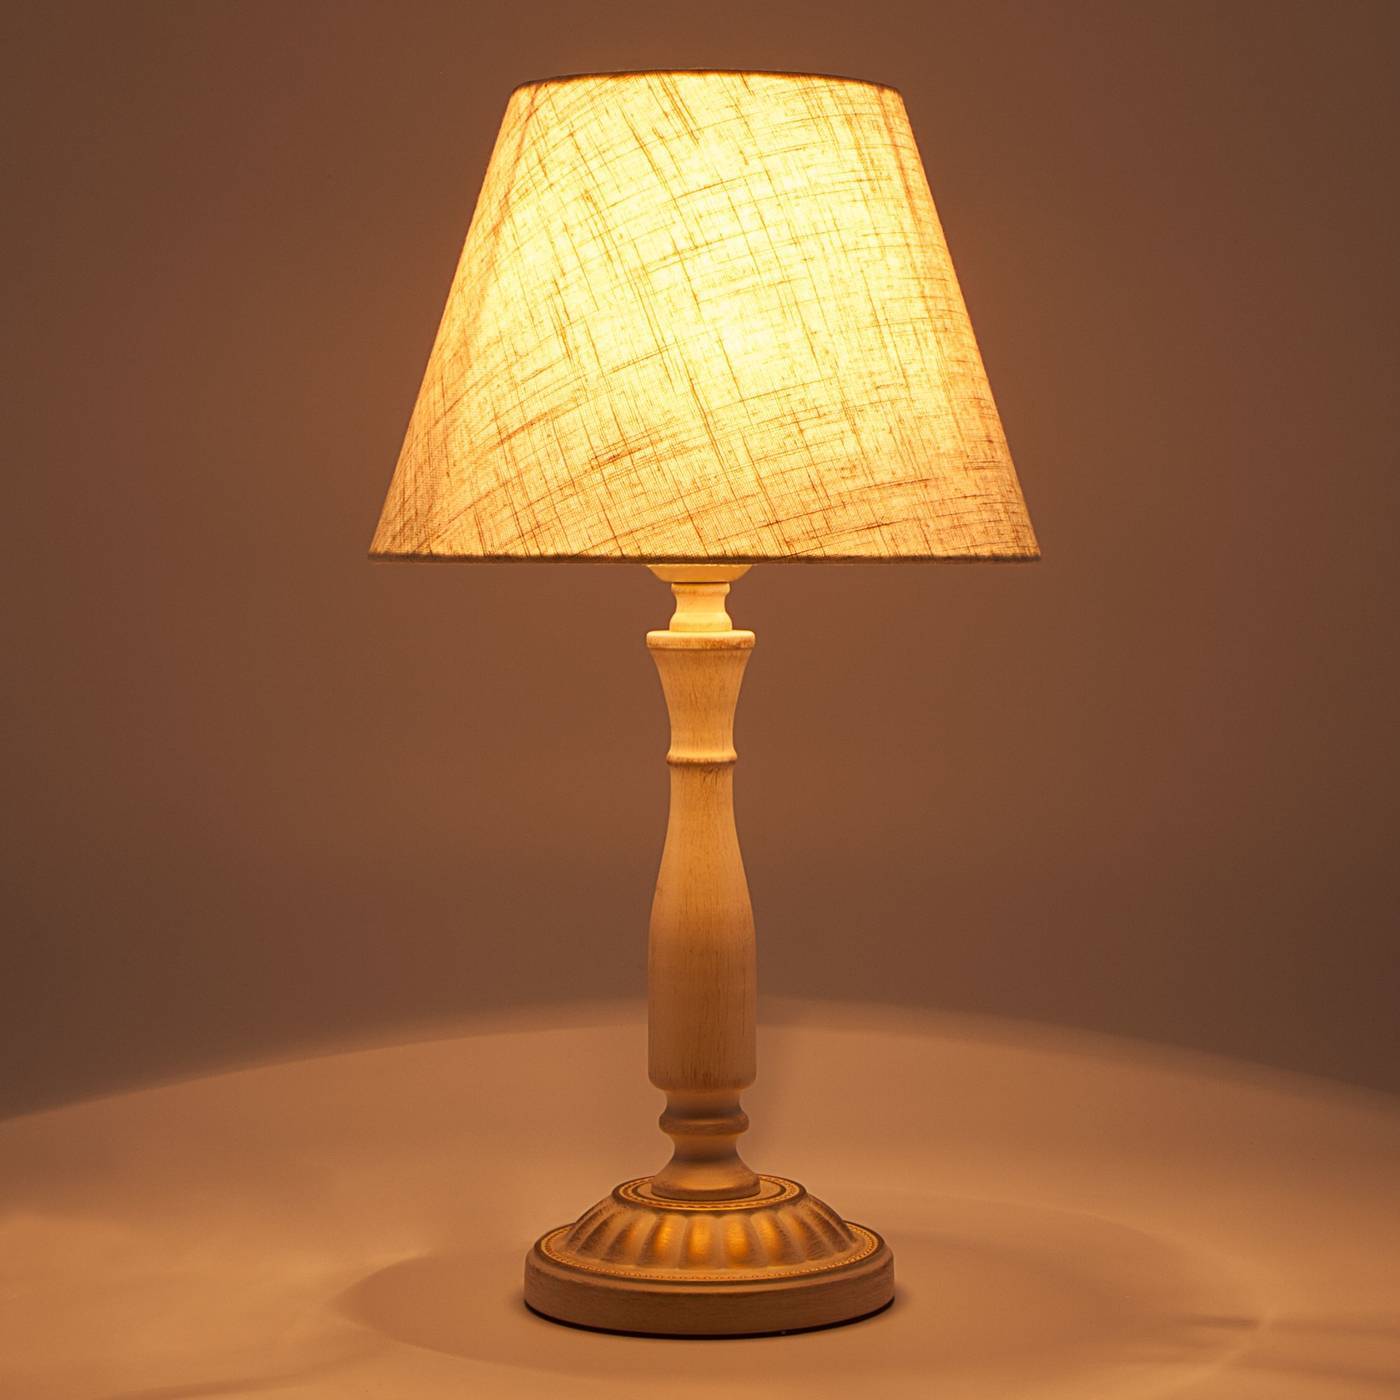 Настольная лампа для рабочего стола – разновидности и критерии выбора